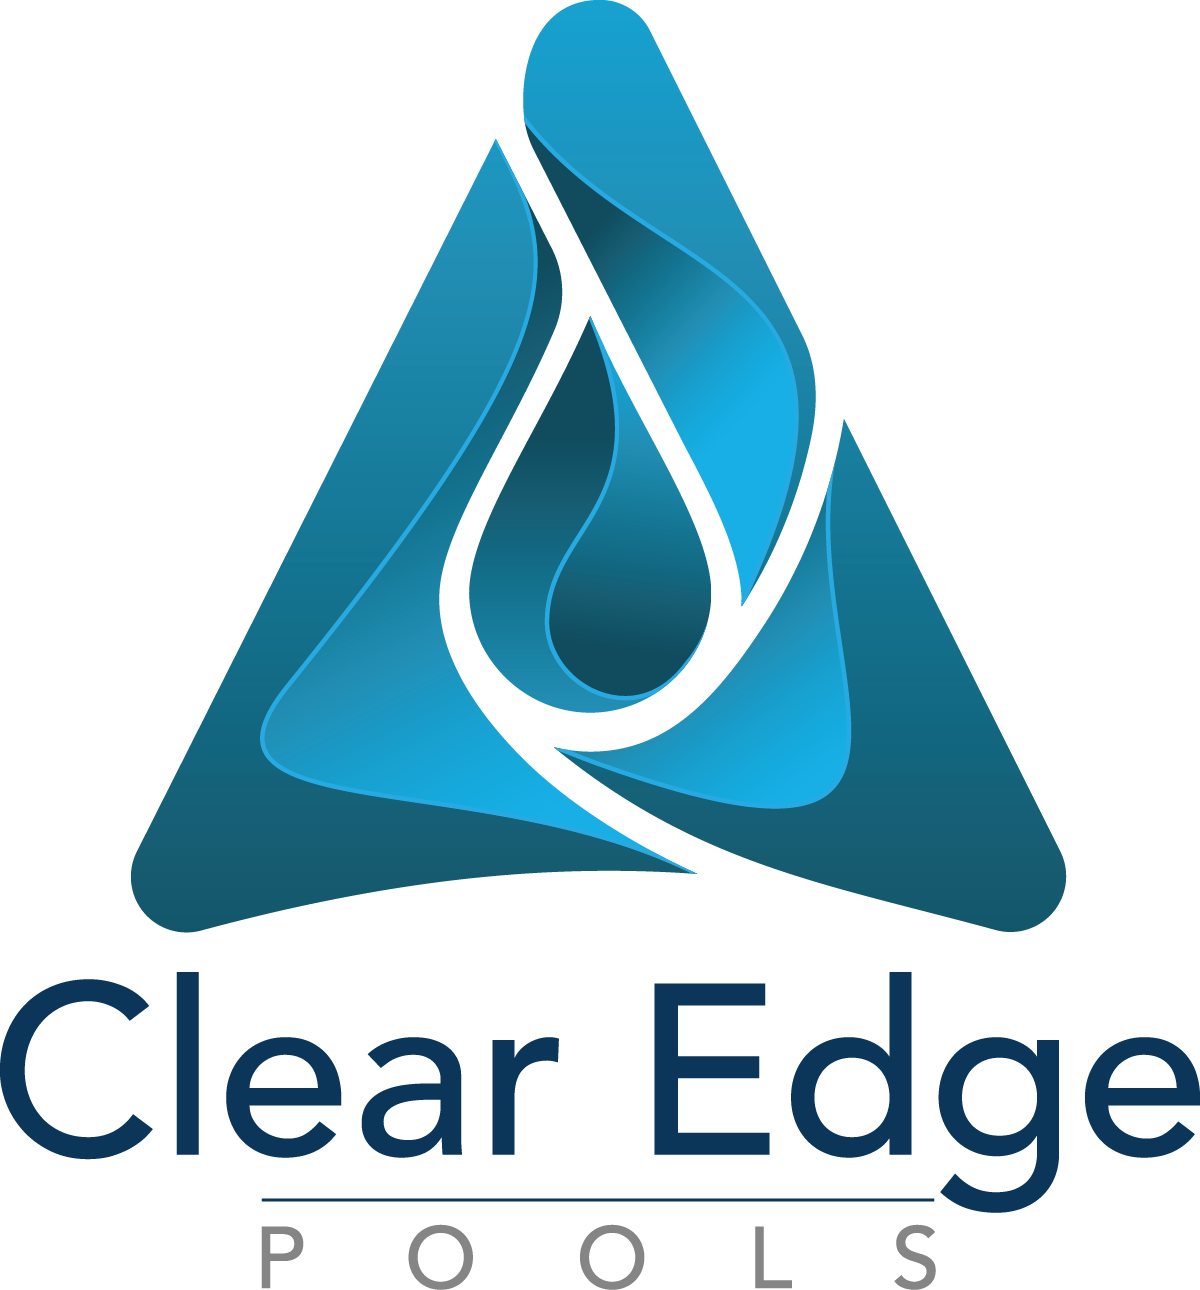 Clear Edge Pools